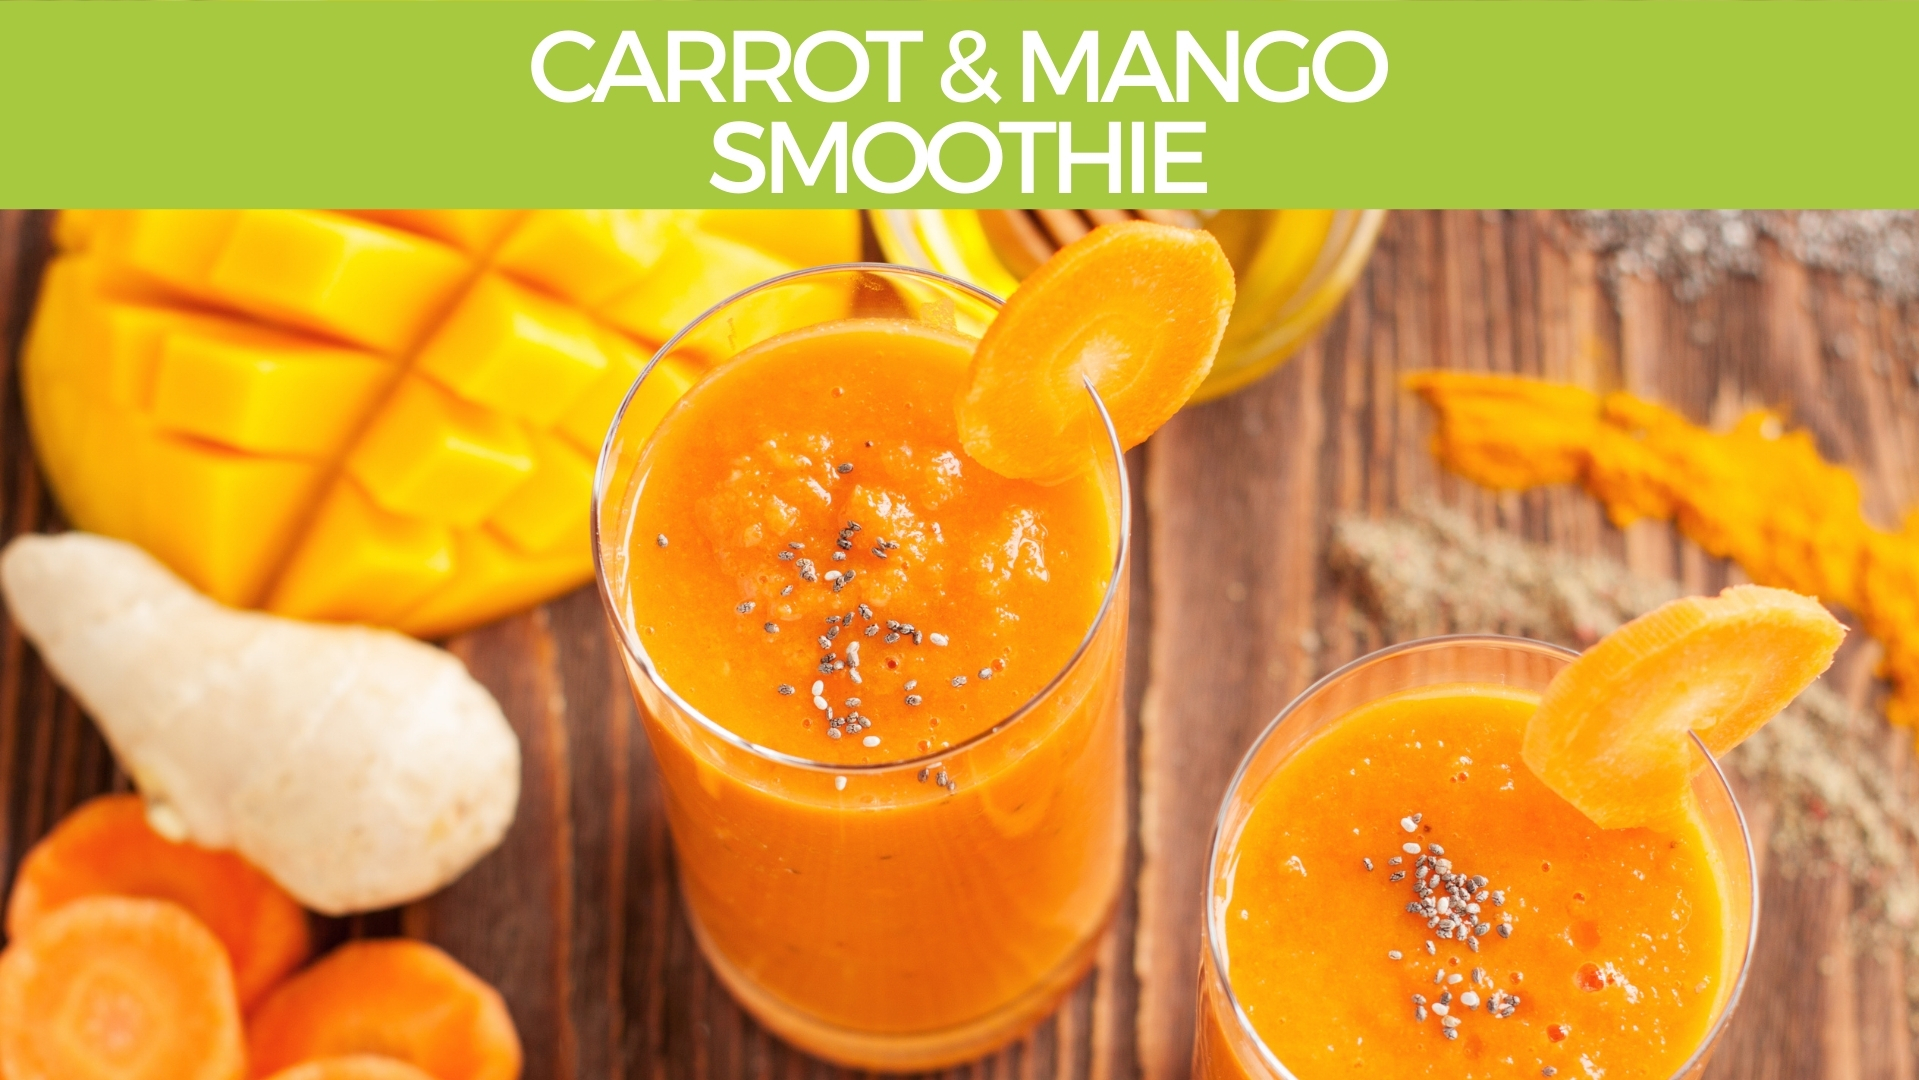 Carrot & Mango Smoothie